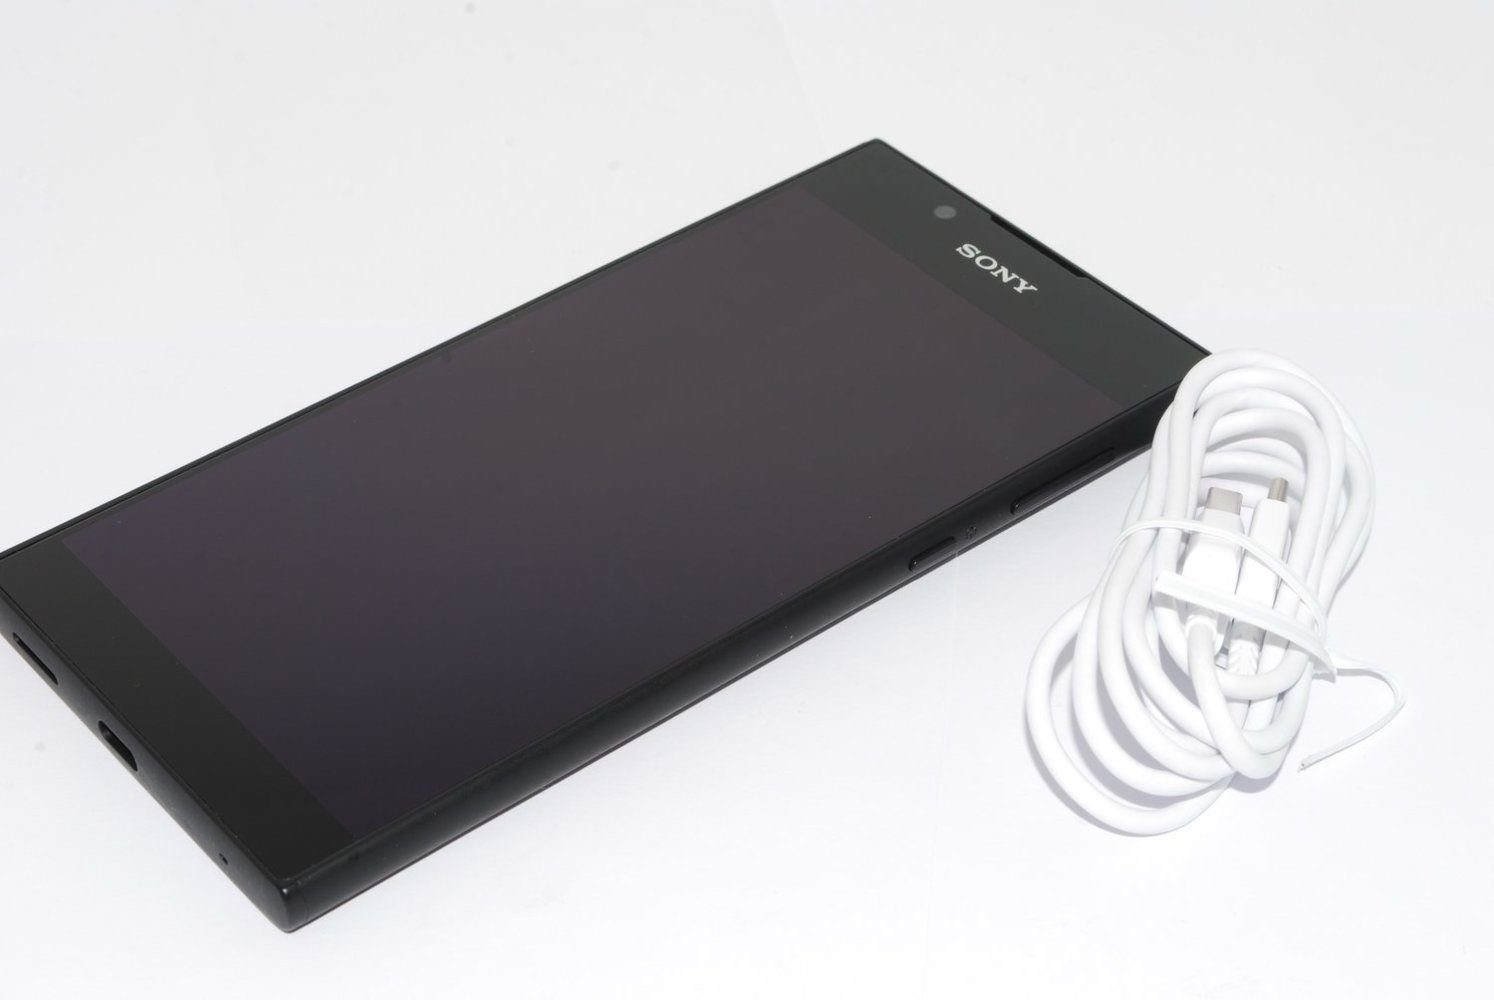 SONY XPERIA L1 G3311 16GB - 13MP CAMERA  4G Black UNLOCKED UK STOCK NO BOX #